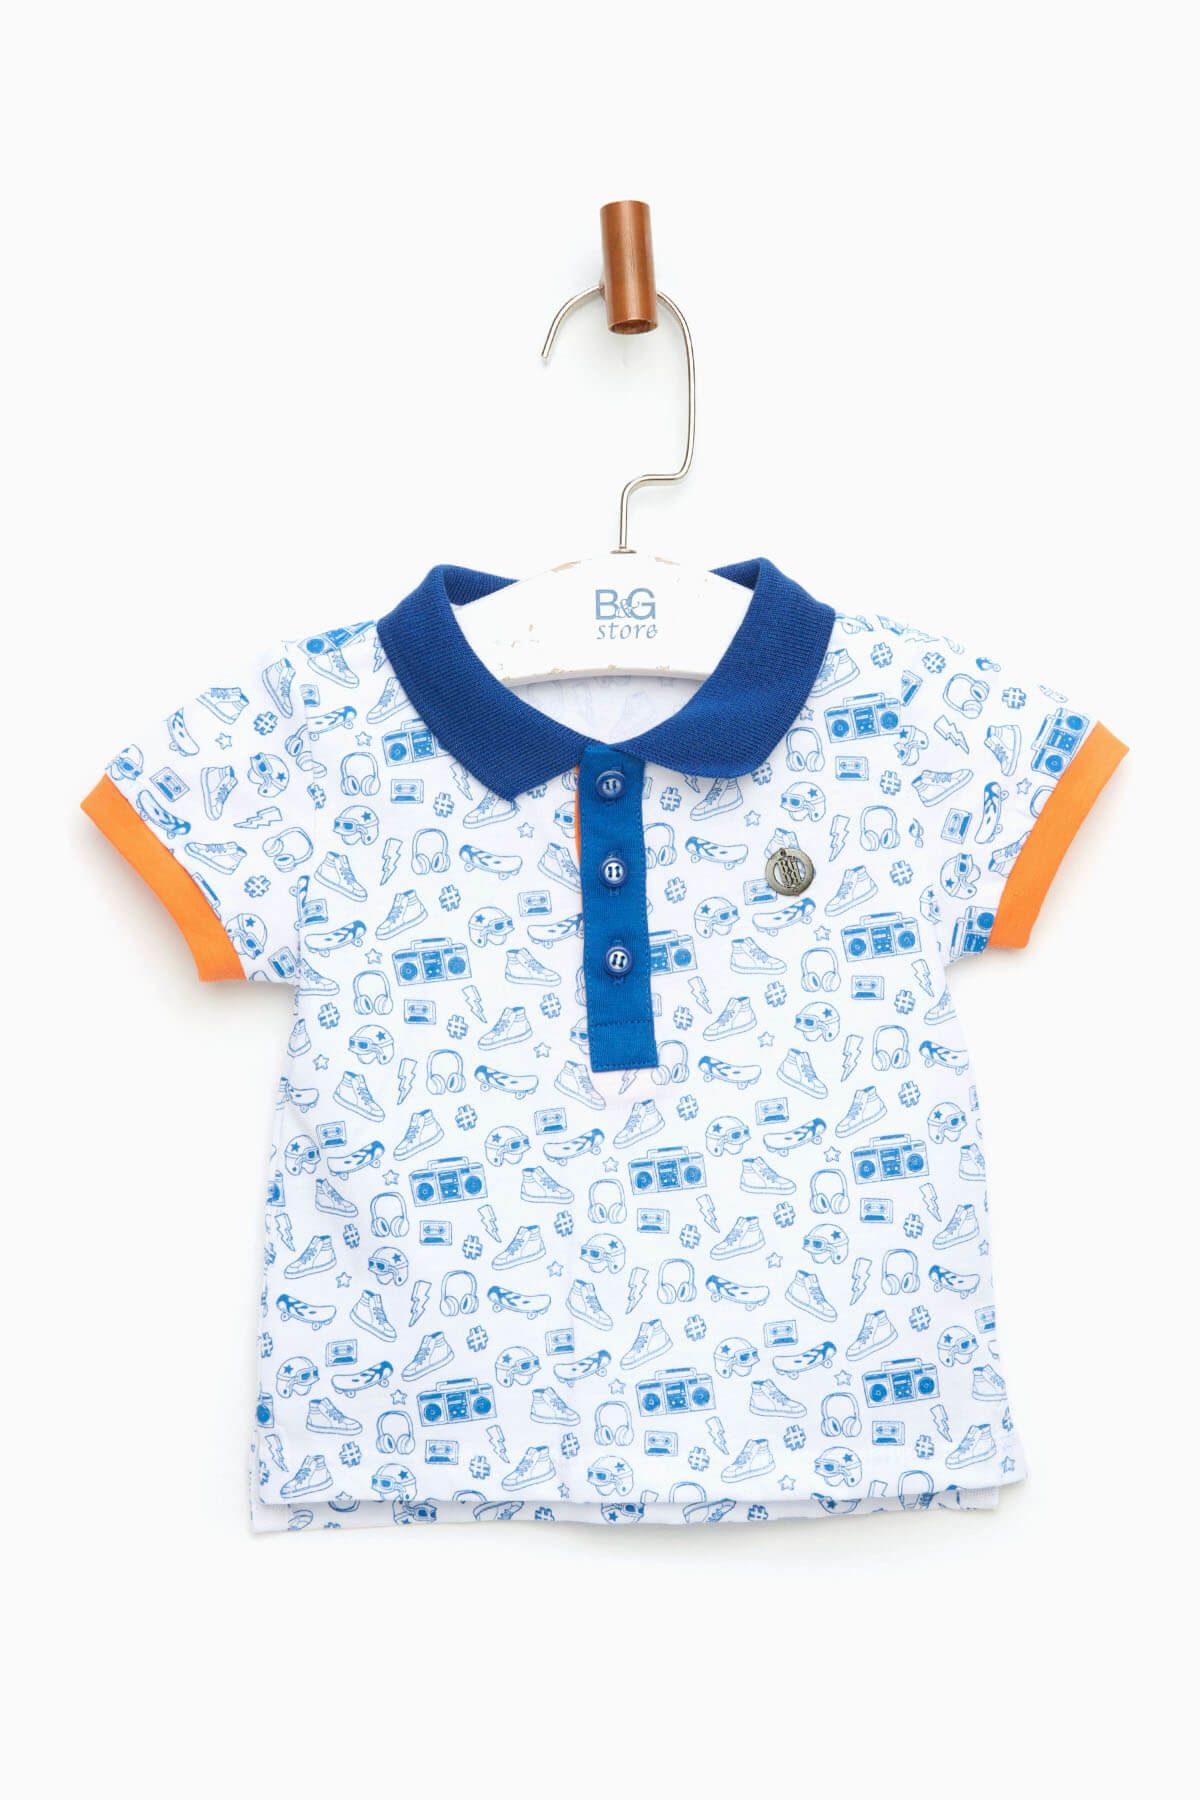 BG Baby Desenli Erkek Bebek Polo T-Shirt   18SS0BG1528